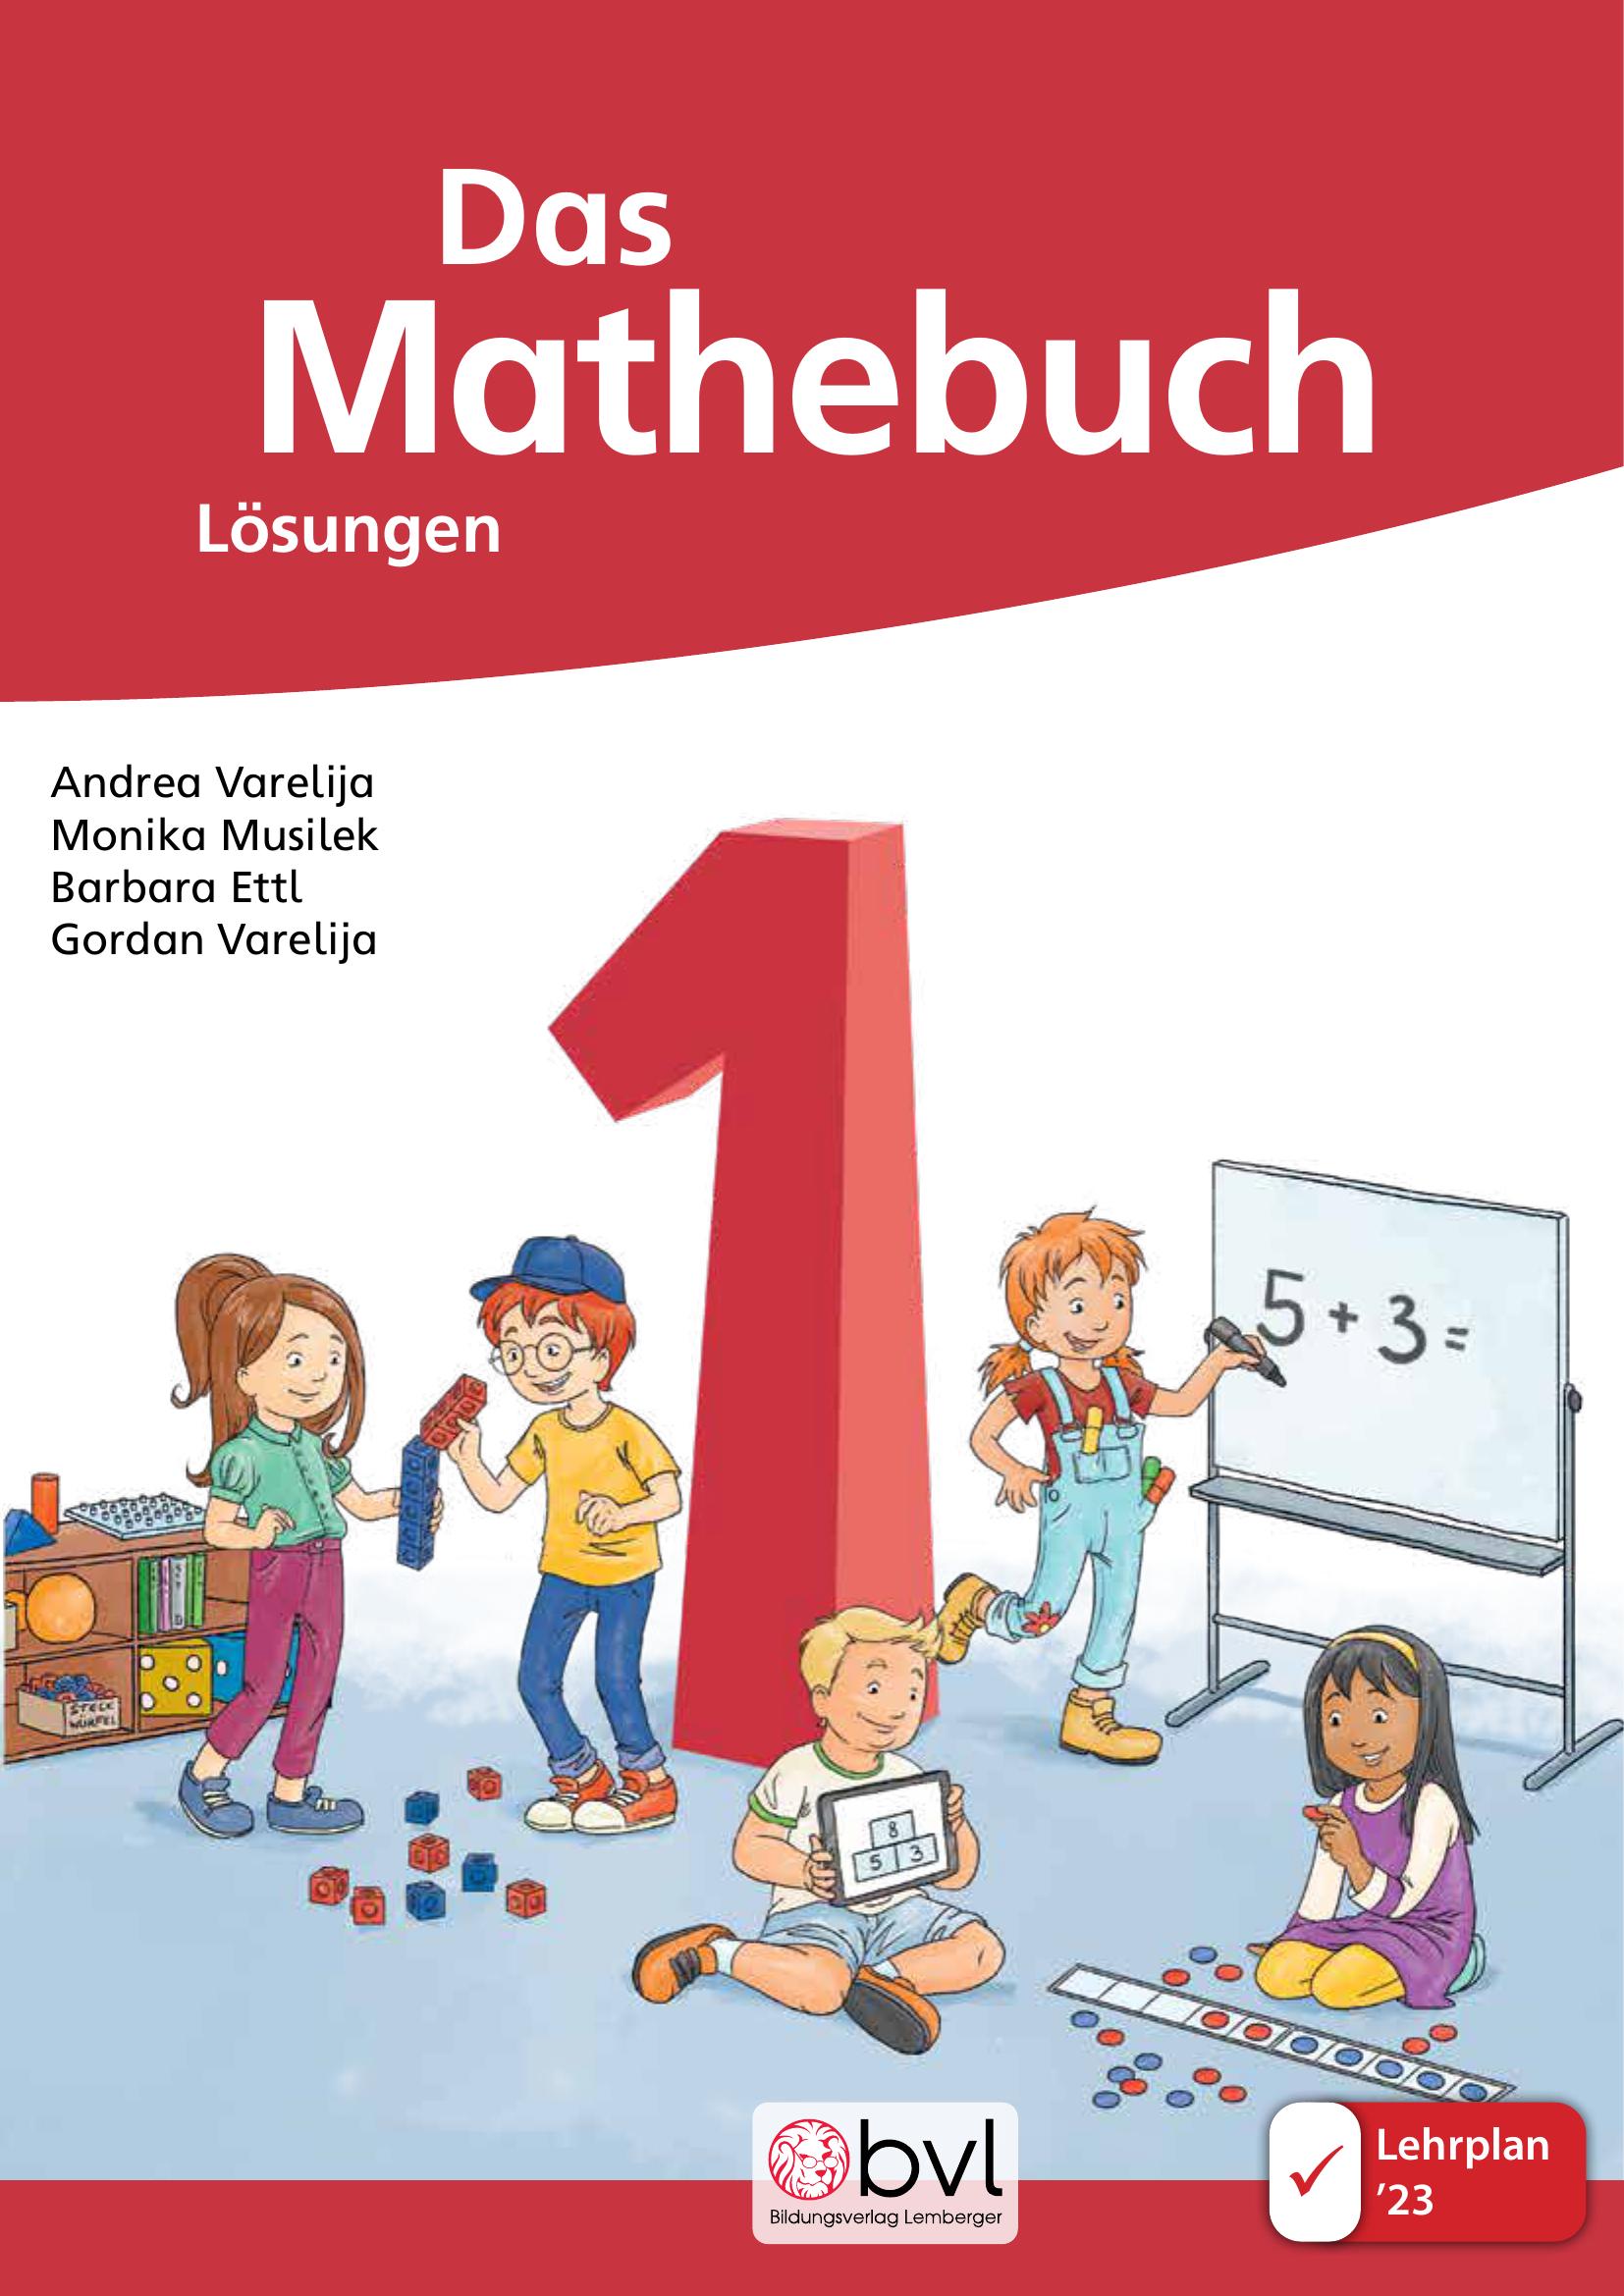 DAS Mathebuch 1 LP’23 v1.1 / Schulbuch – Lösungen